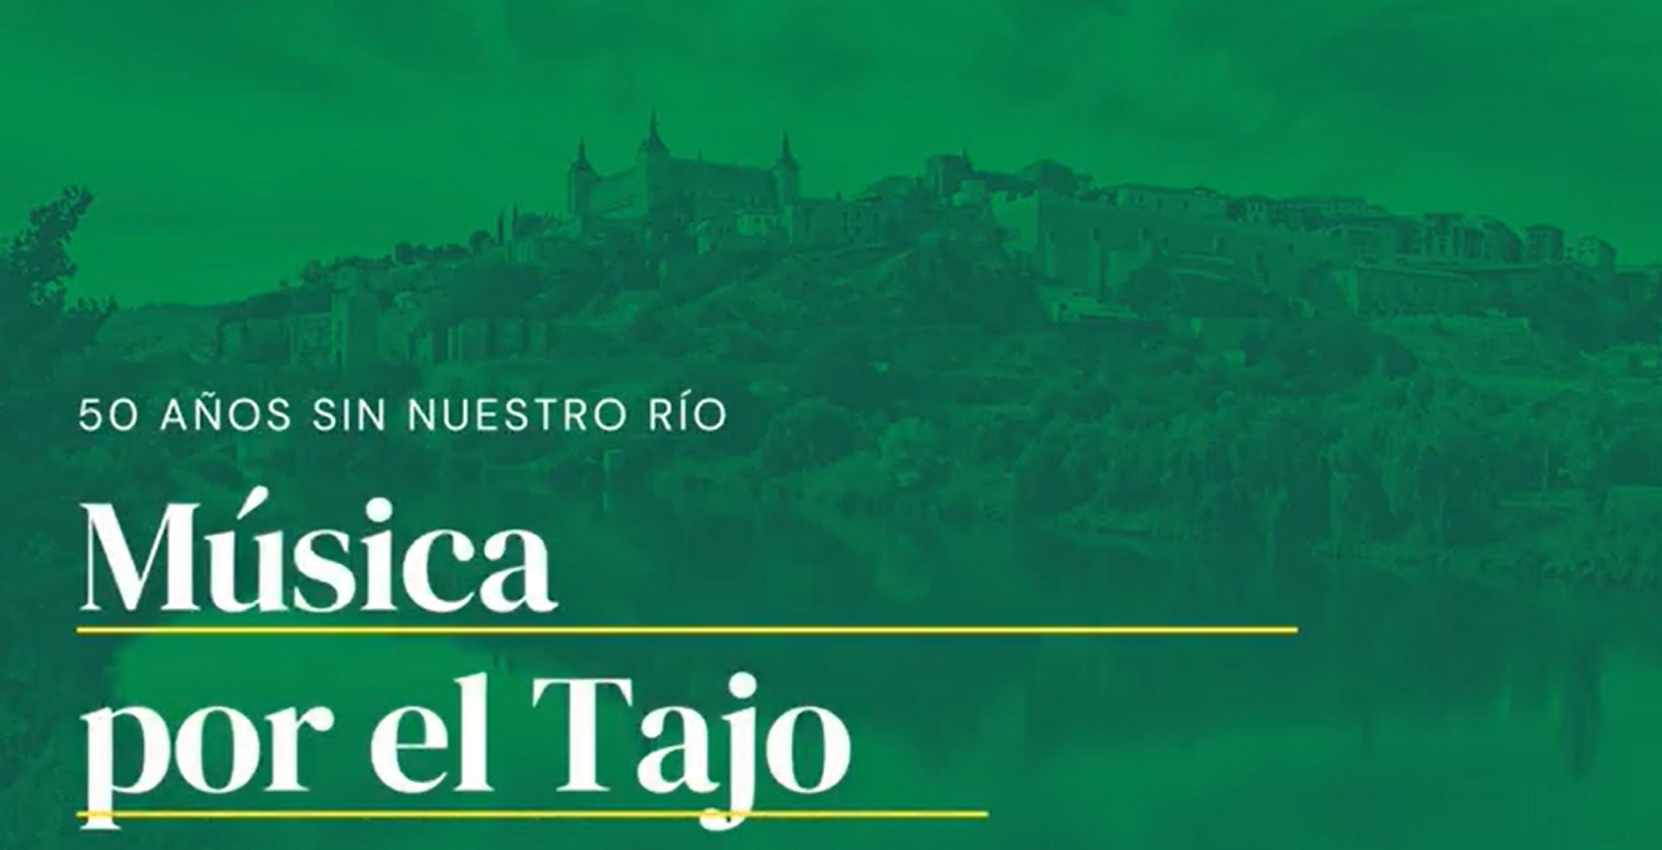 La Real Fundación de Toledo va a impulsar un disco para denunciar los problemas del Tajo.